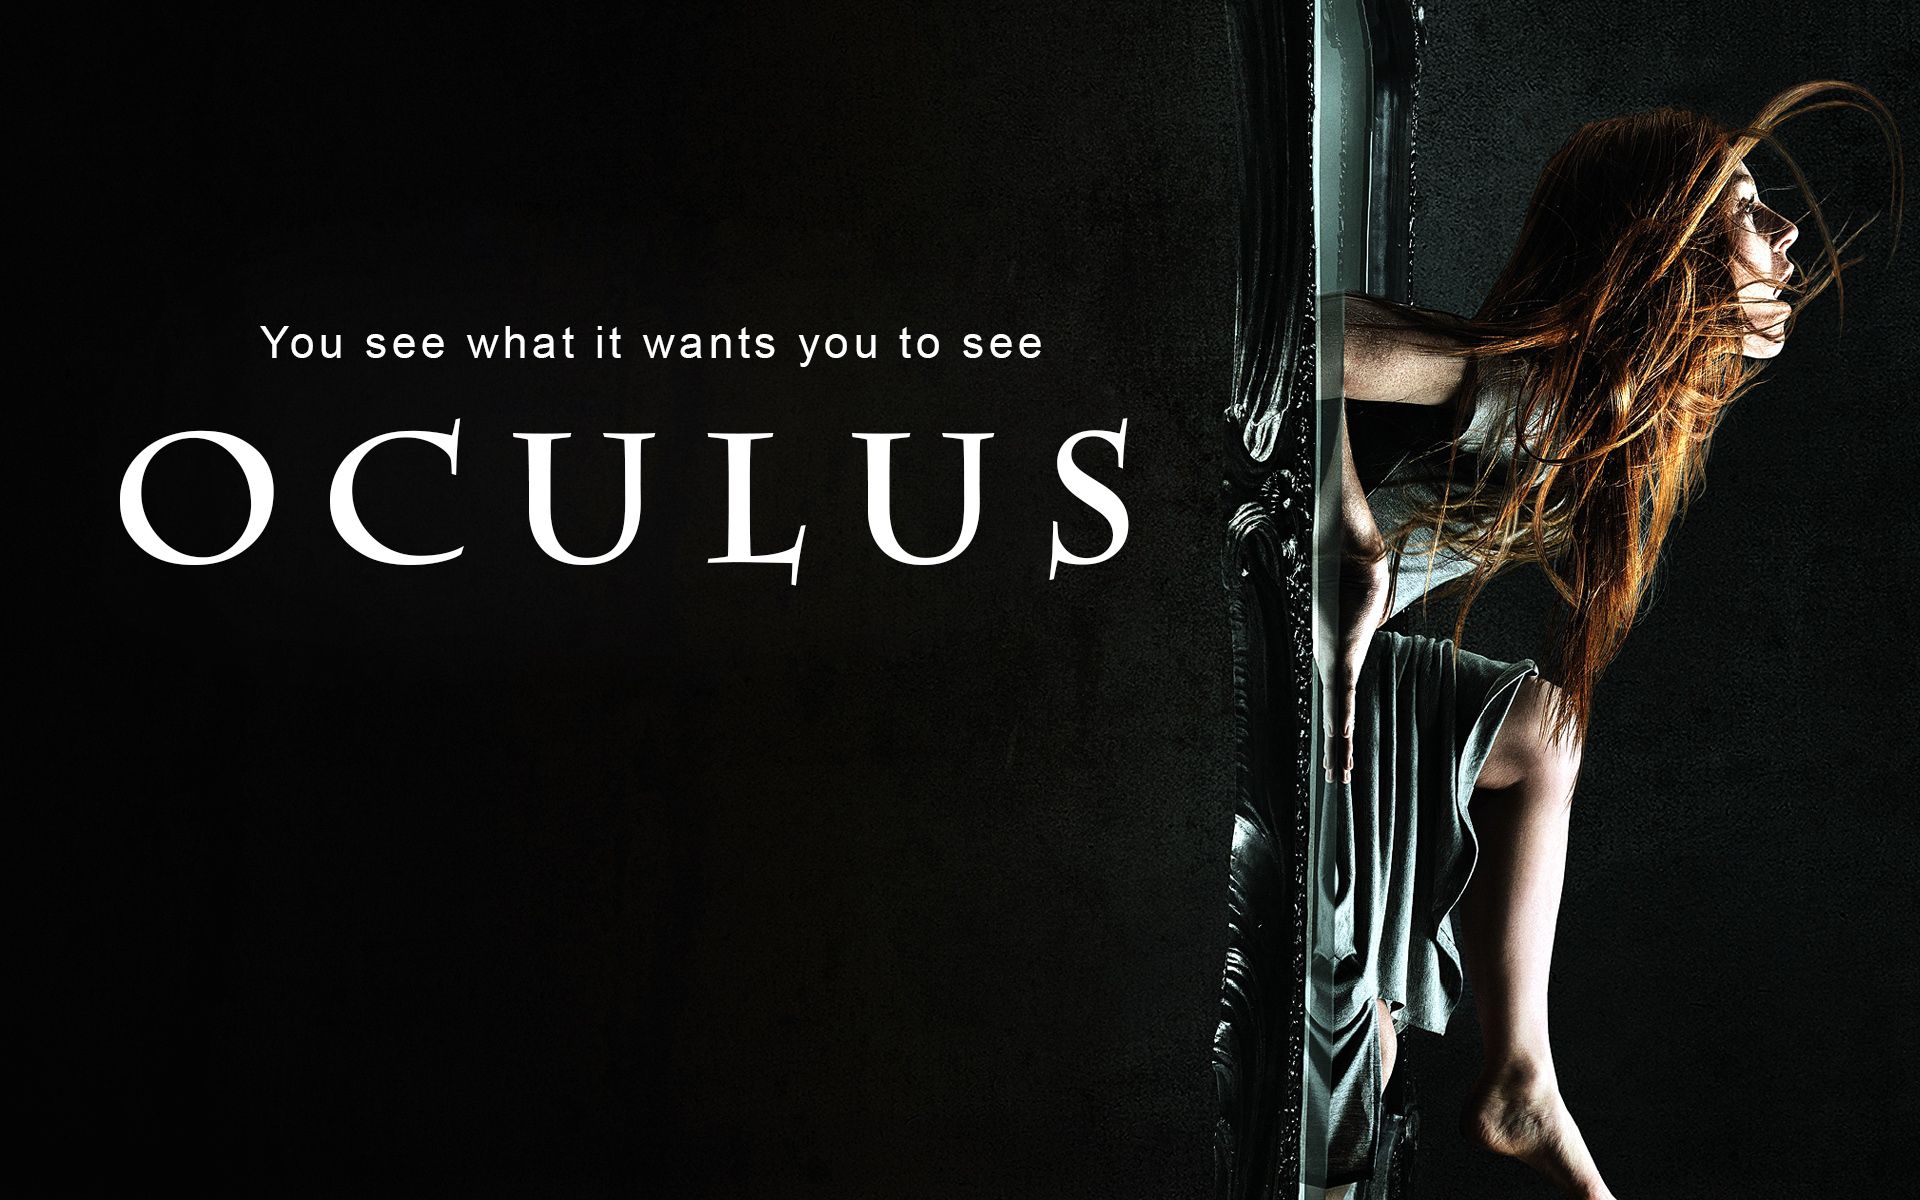 Crítica de la película Oculus en filmfilicos el blog de cine